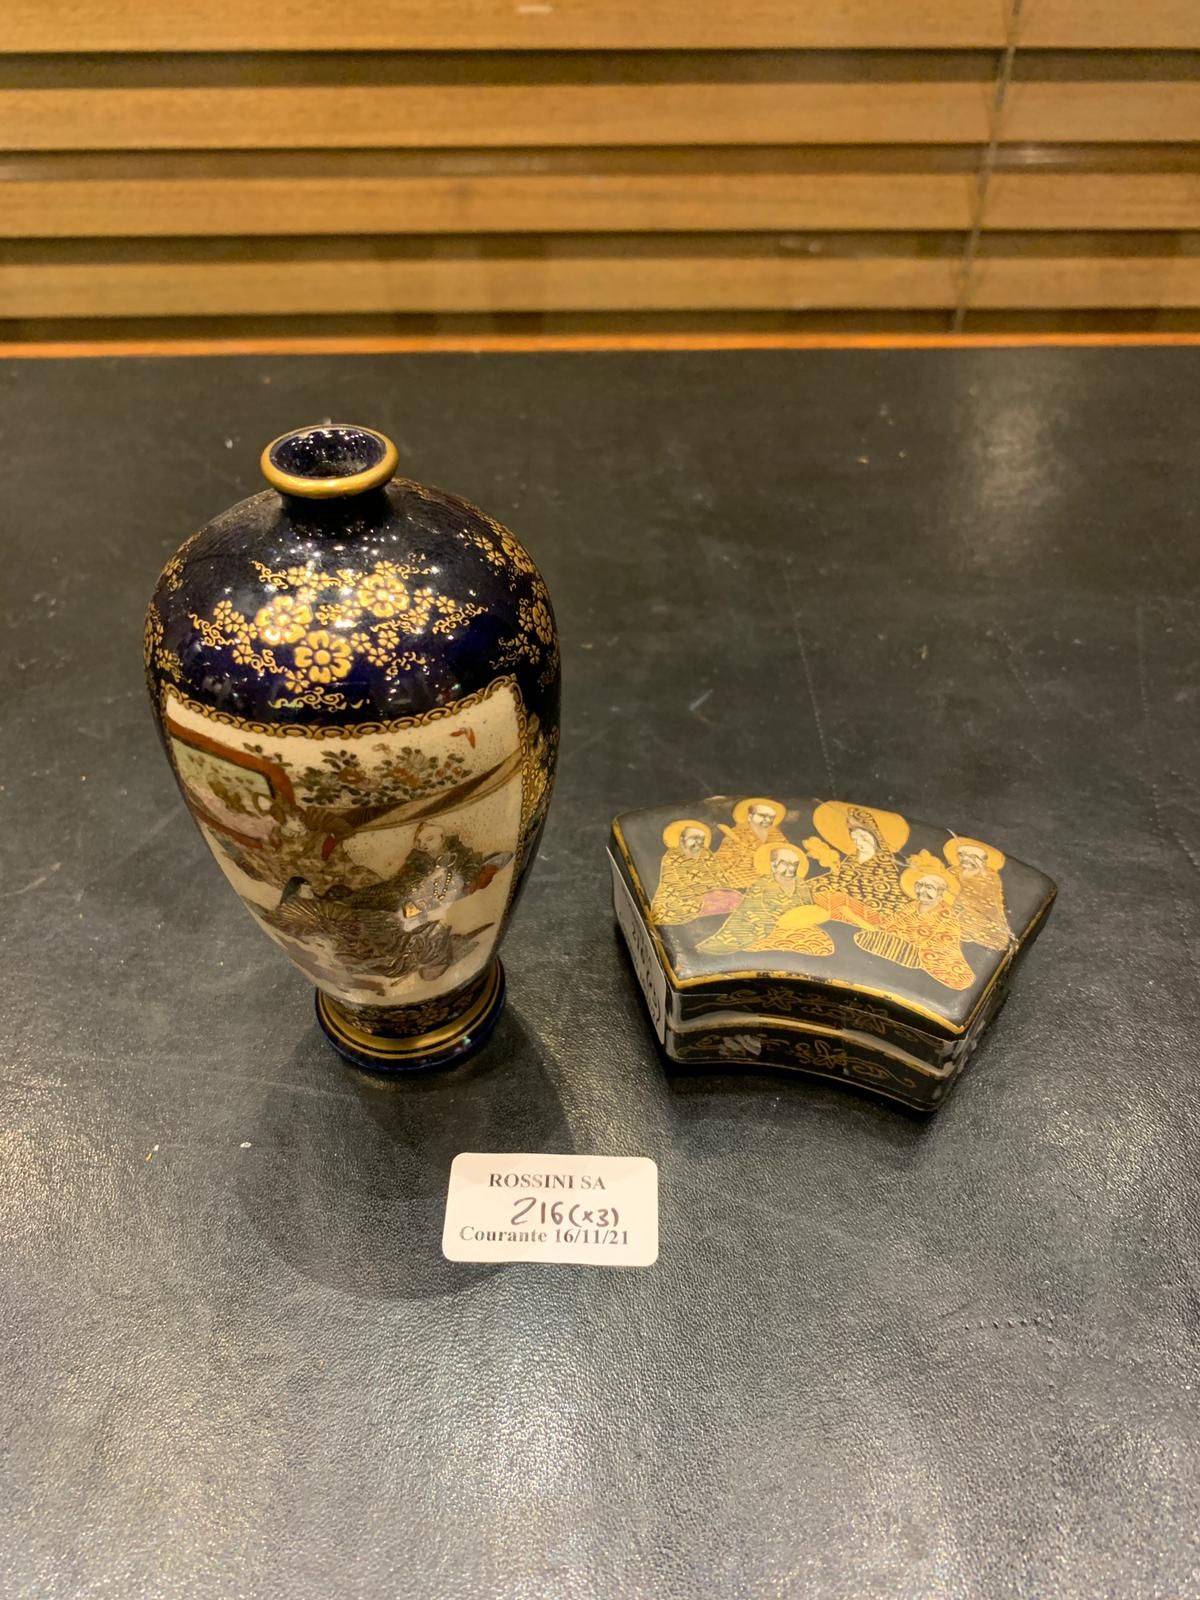 Null 两件萨摩瓷器拍品，包括：:

- 一个带有字符的有盖盒子

- 饰有字符的花瓶

对人物和颈部的意外事故。

日本，20世纪